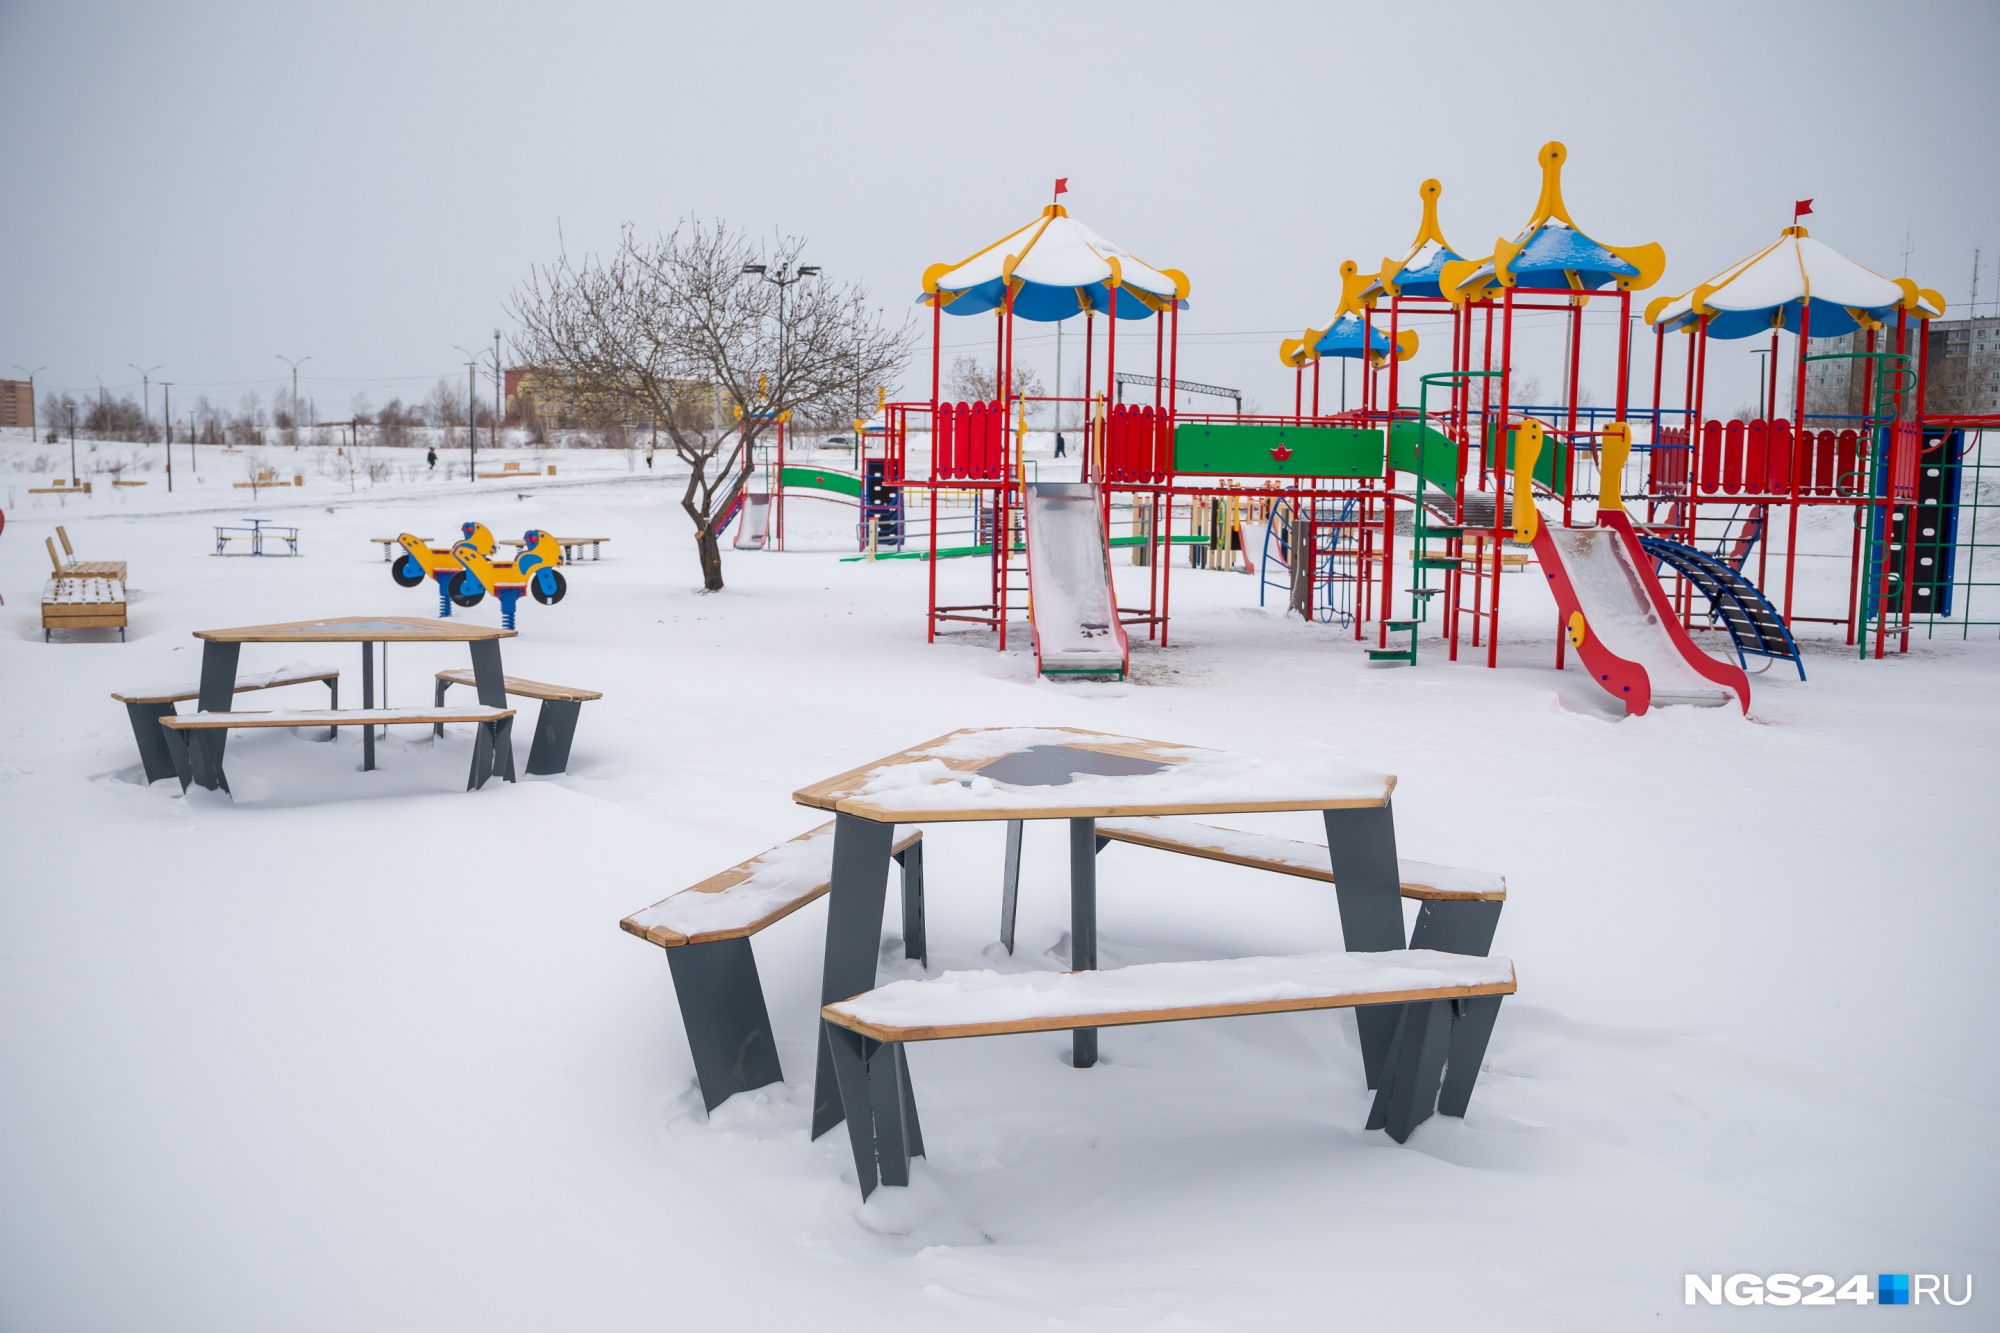 На детских площадках есть стильные столики для отдыха родителей. Но вот вместо наиболее безопасного прорезиненного покрытия на площадке насыпали щебень с песком